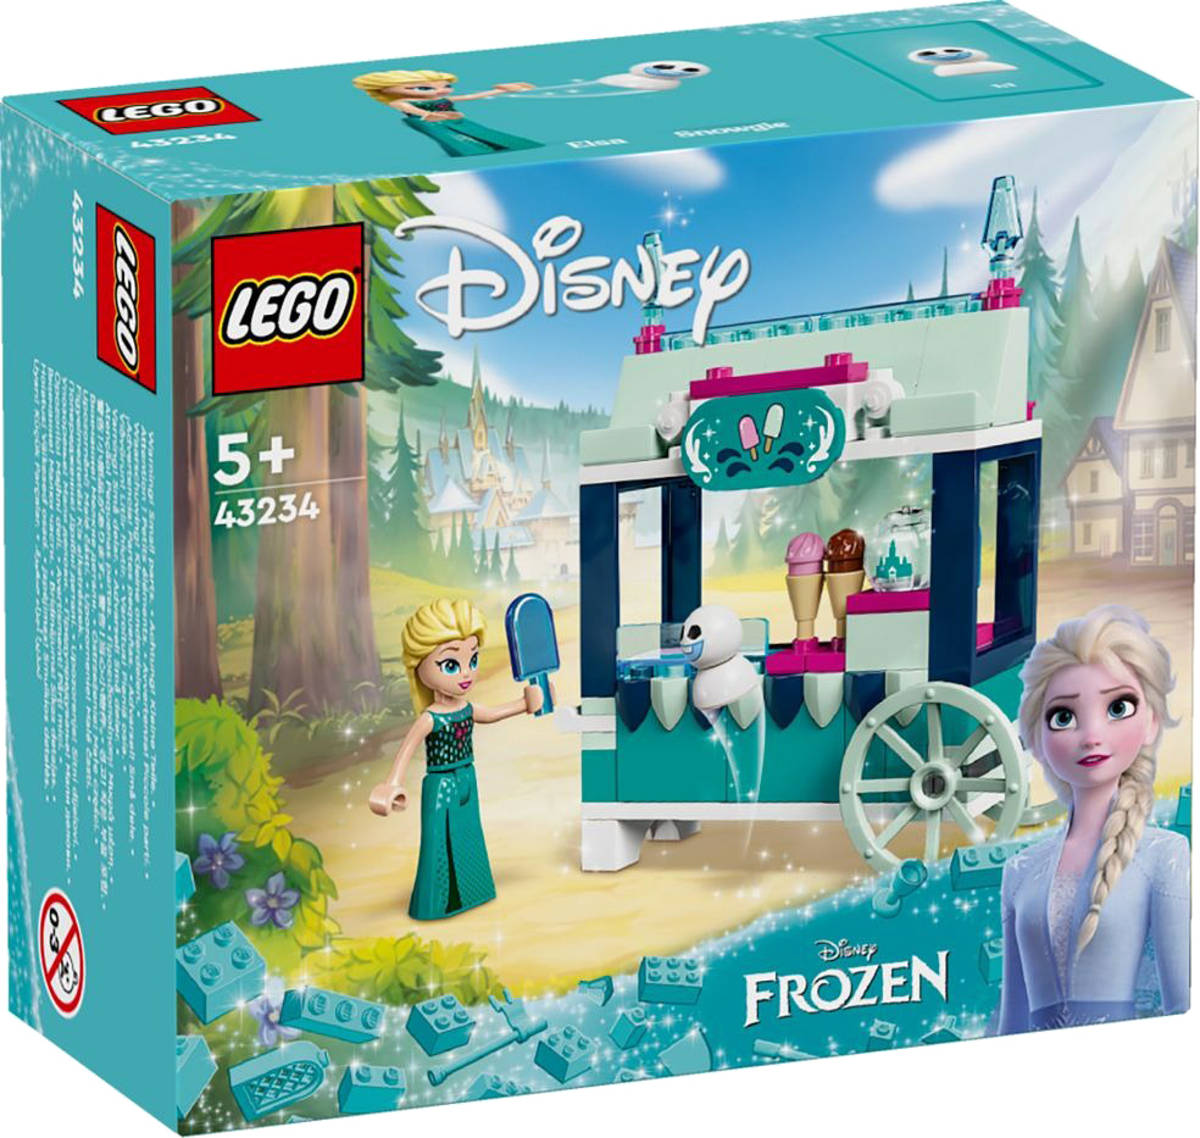 LEGO DISNEY Elsa a dobroty z Ledového království (Frozen) 43234 STAVEBNICE - zvìtšit obrázek